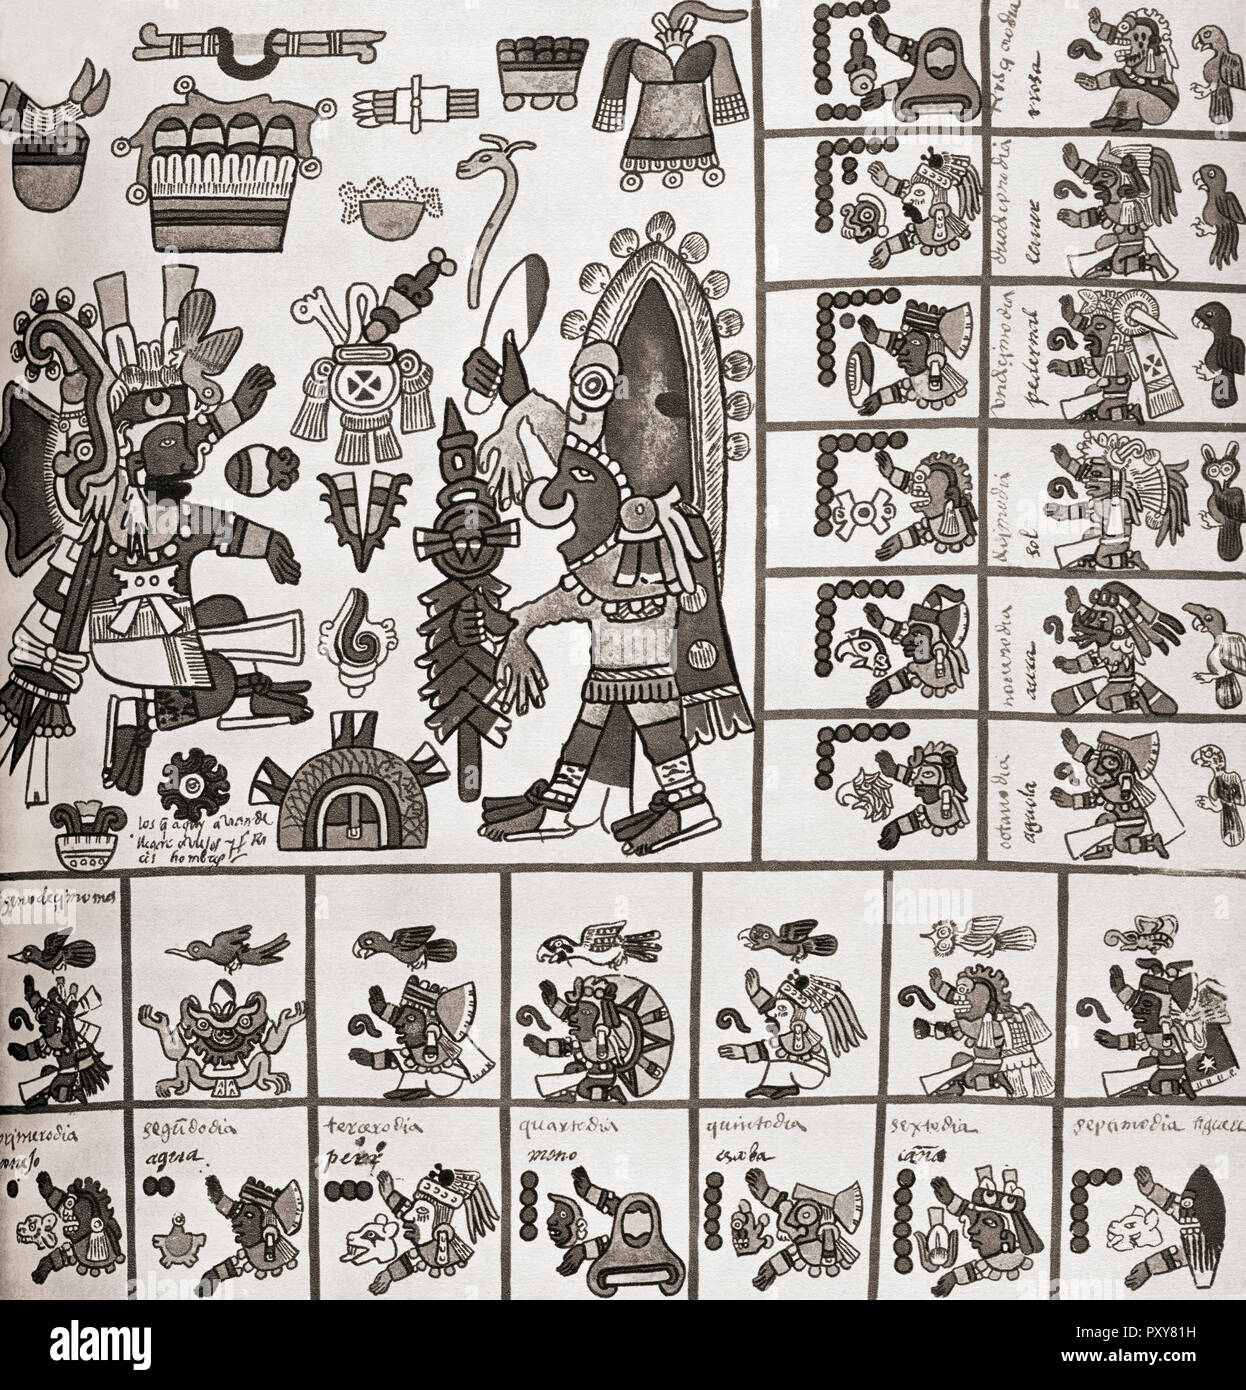 Dettaglio di un fascimile copia del Codex Borbonicus. Il Codex Borbonicus è un codex azteca scritto da sacerdoti azteca poco prima o poco dopo la conquista spagnola del Messico nel XVI secolo. Foto Stock